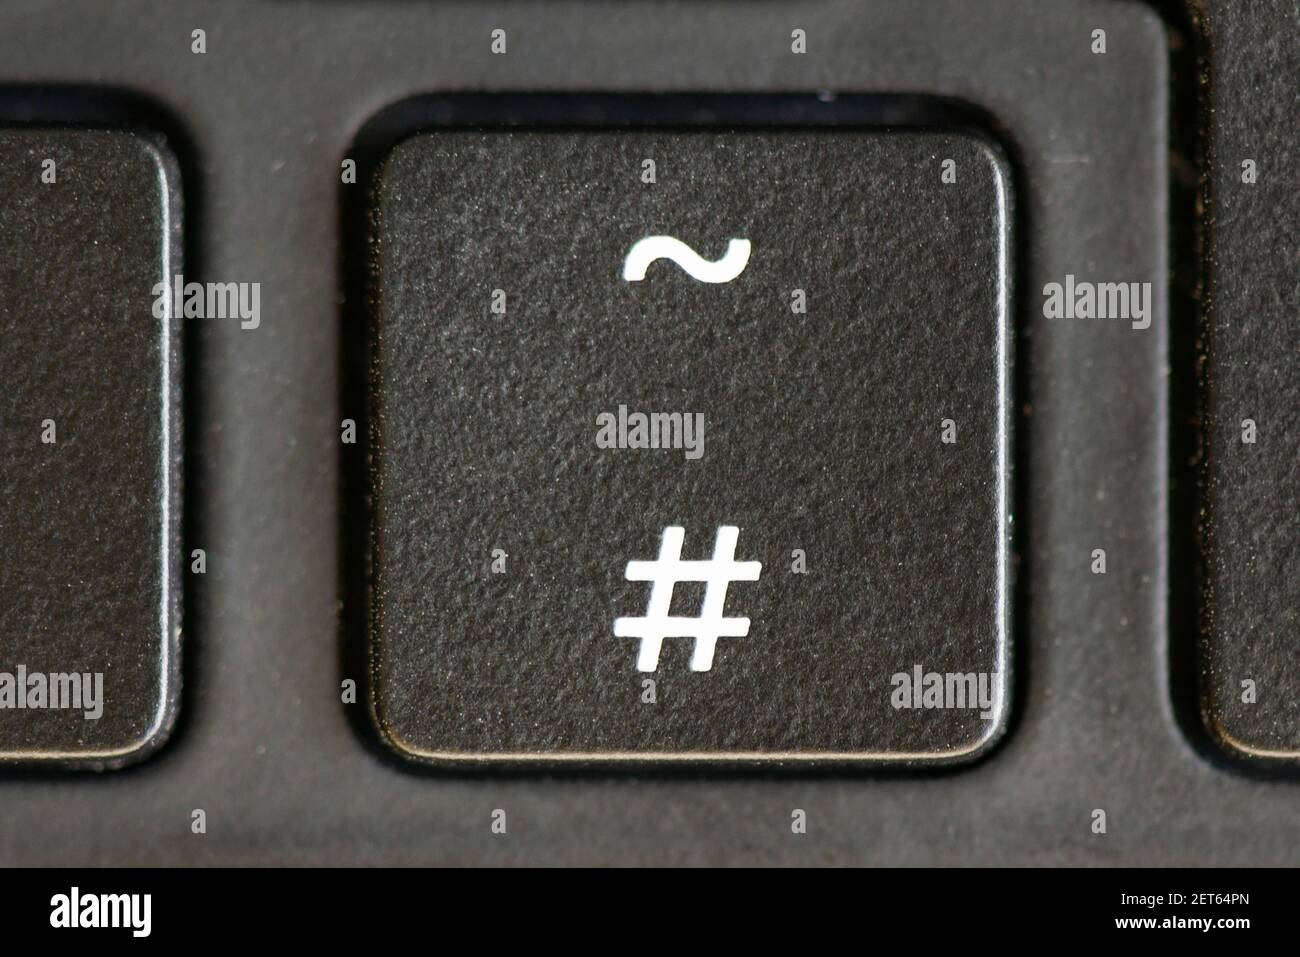 La touche dièse et tilde du clavier d'un ordinateur portable Photo Stock -  Alamy